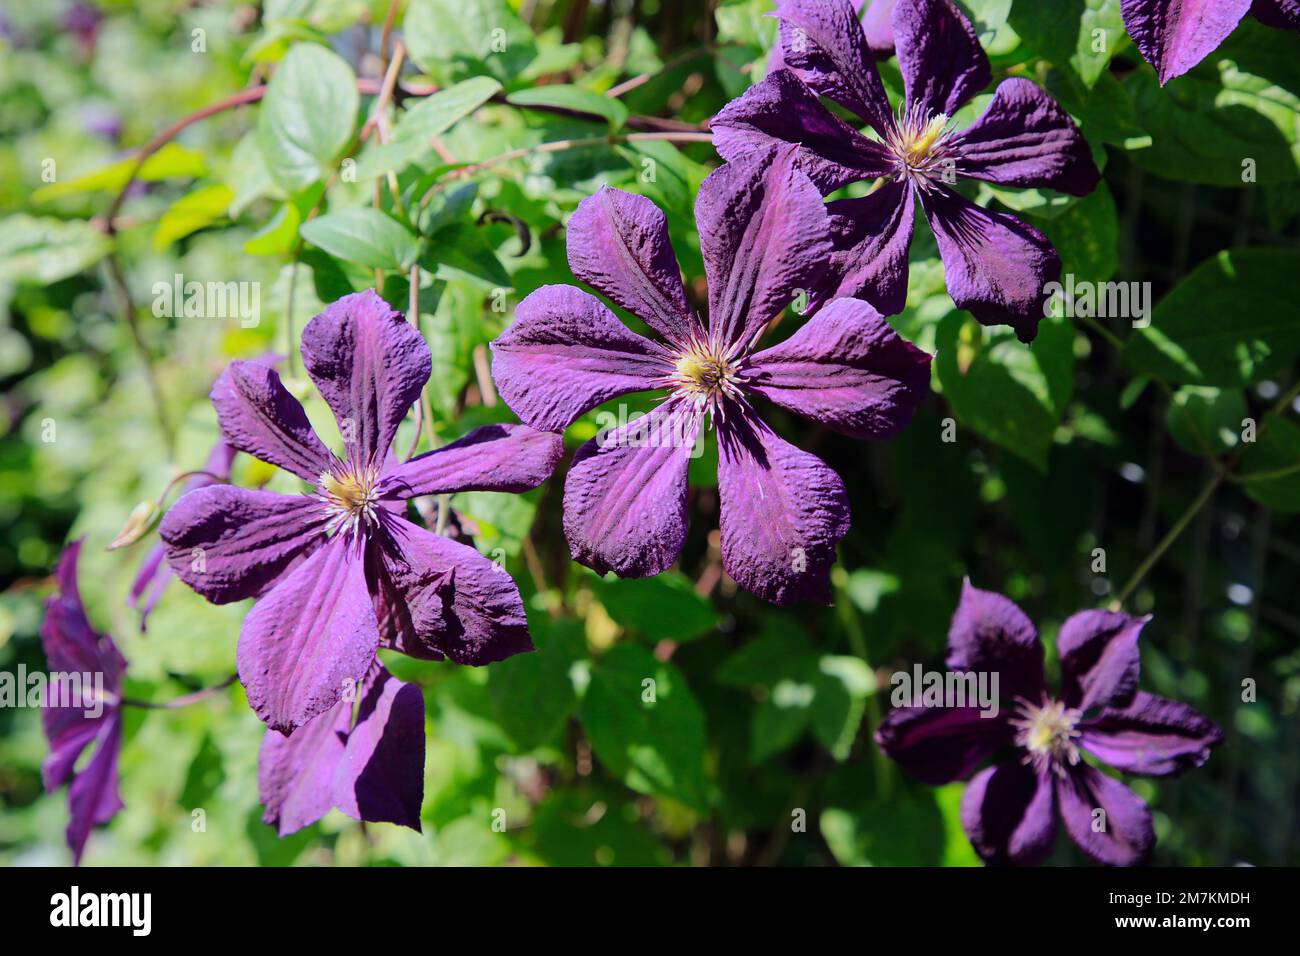 Fiori di Clematis viola che crescono nel parco in estate. Fotografia naturale. Foto Stock